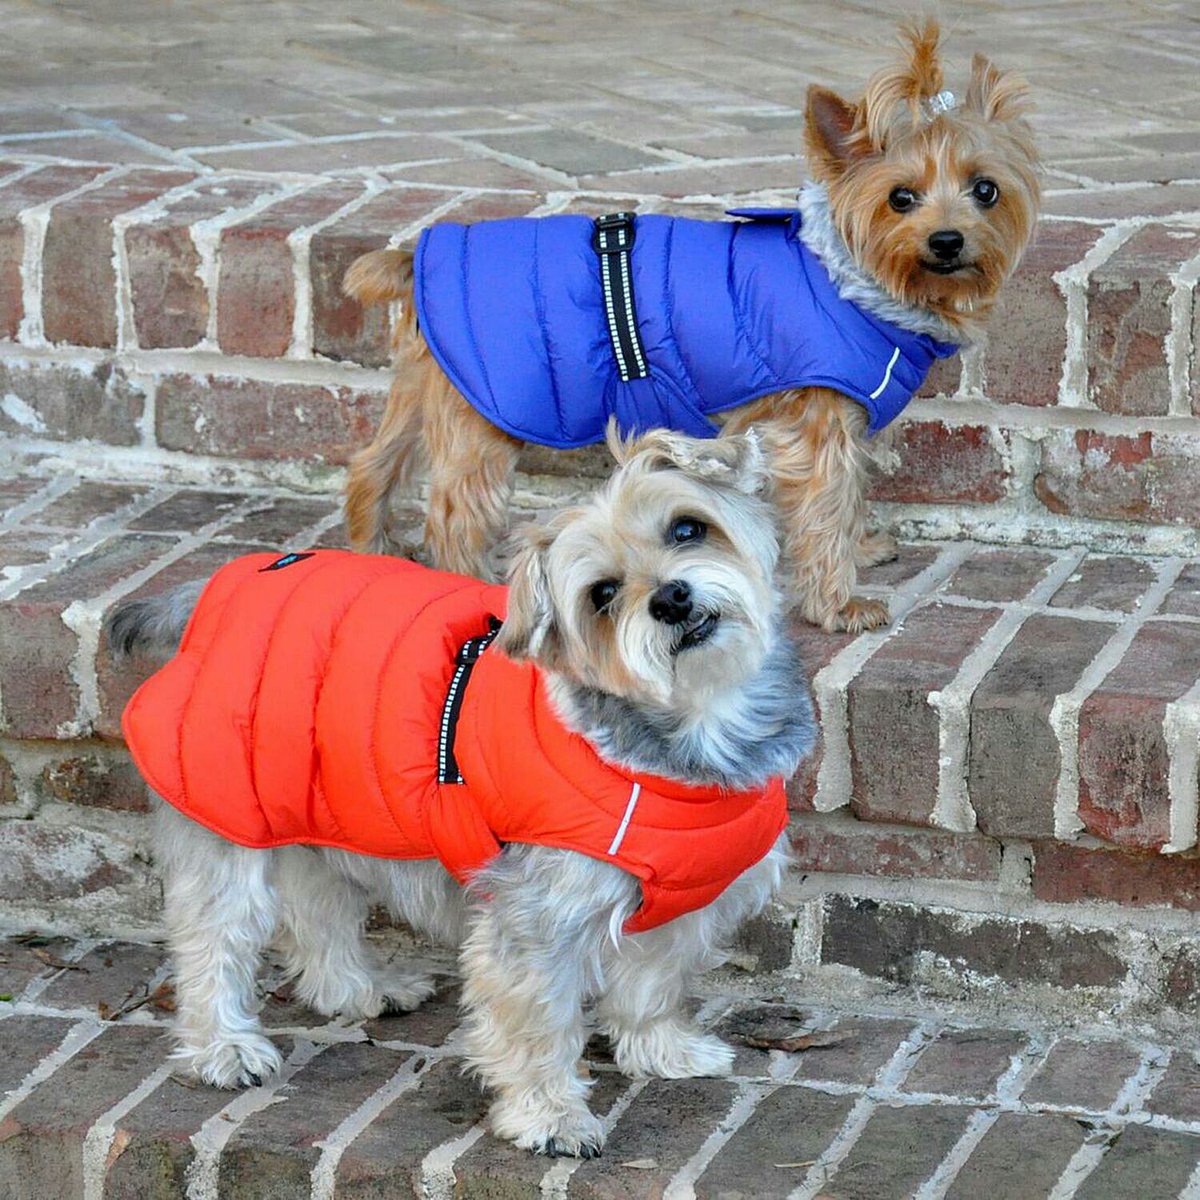 The best winter warmup! 
#dogjacket #puffercoat #keepwarm